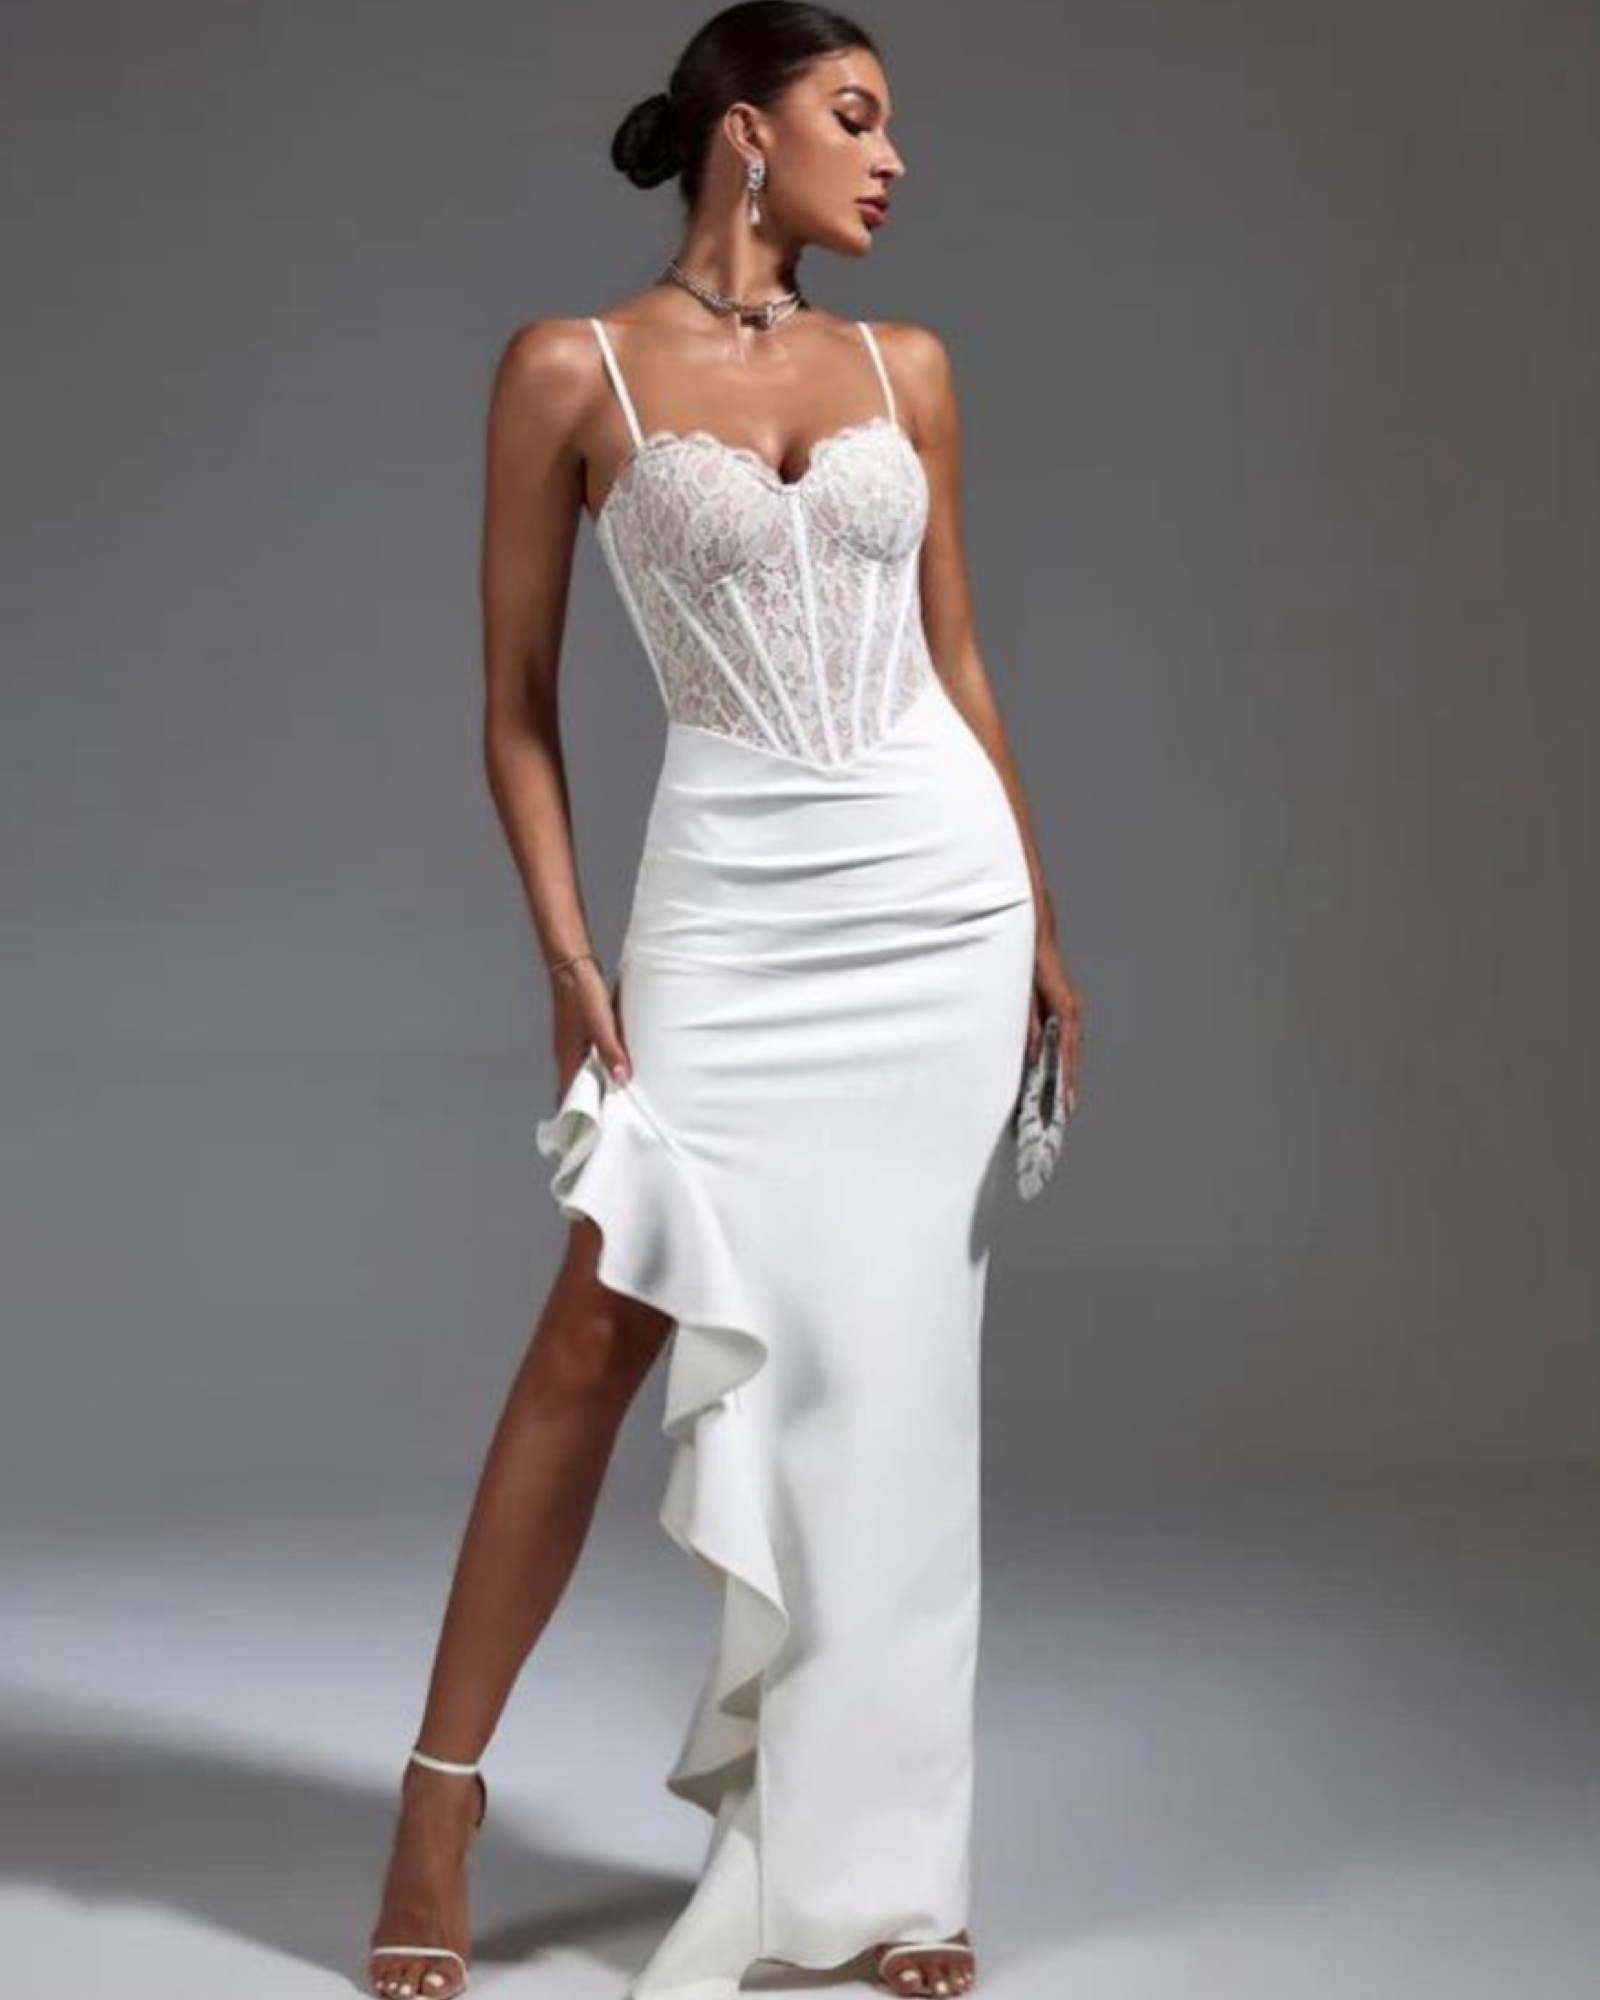 Long white lace top dress